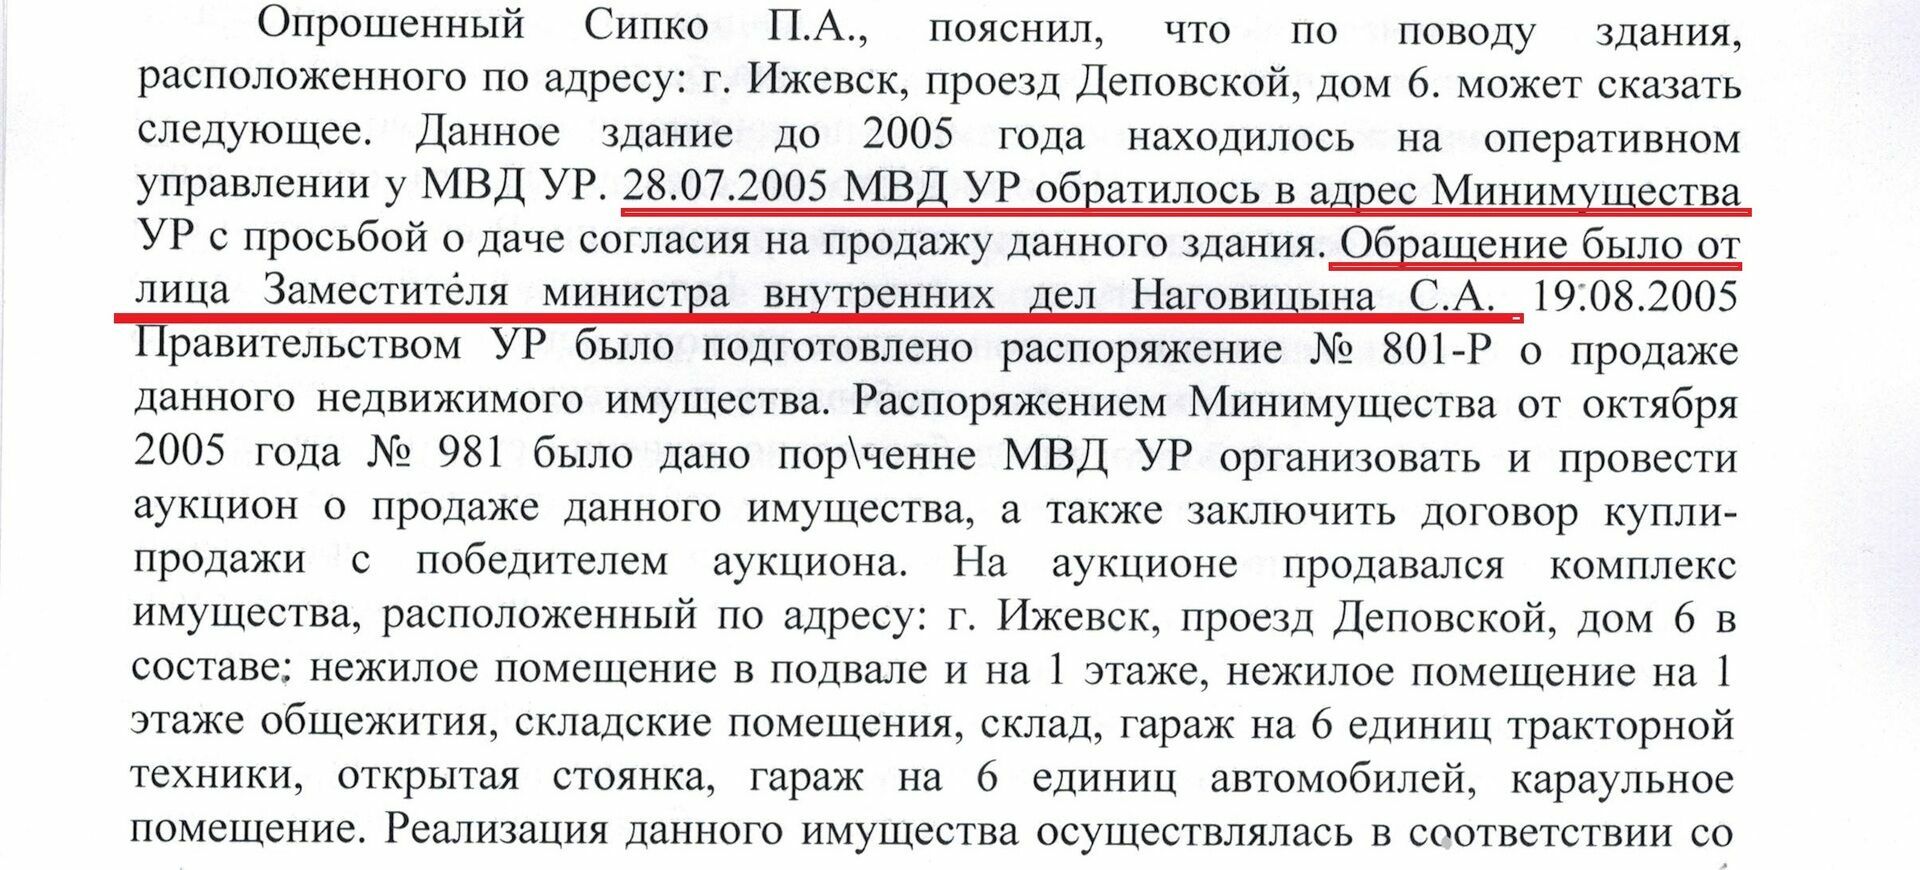 Просьба о продаже здания была от лица заместителя министра МВД Наговицына С.А.